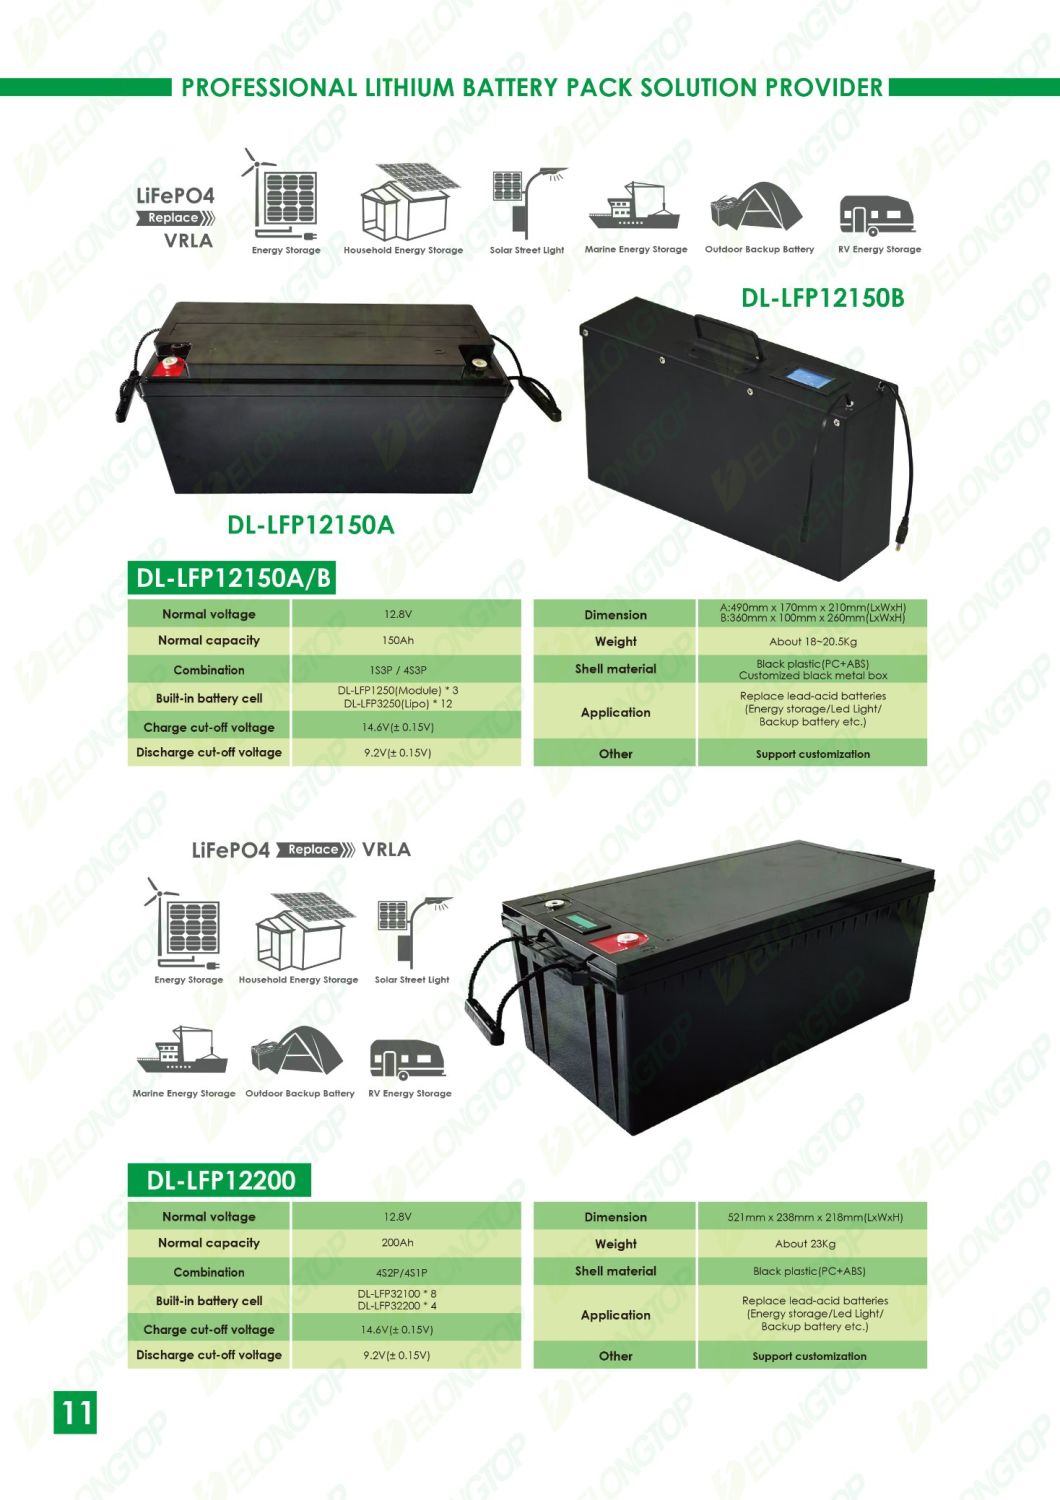 Promoción de venta 10% batería solar litio 12V 200Ah Batería de LIFEPO4 con célula de bolsa de 3.2v 50ah